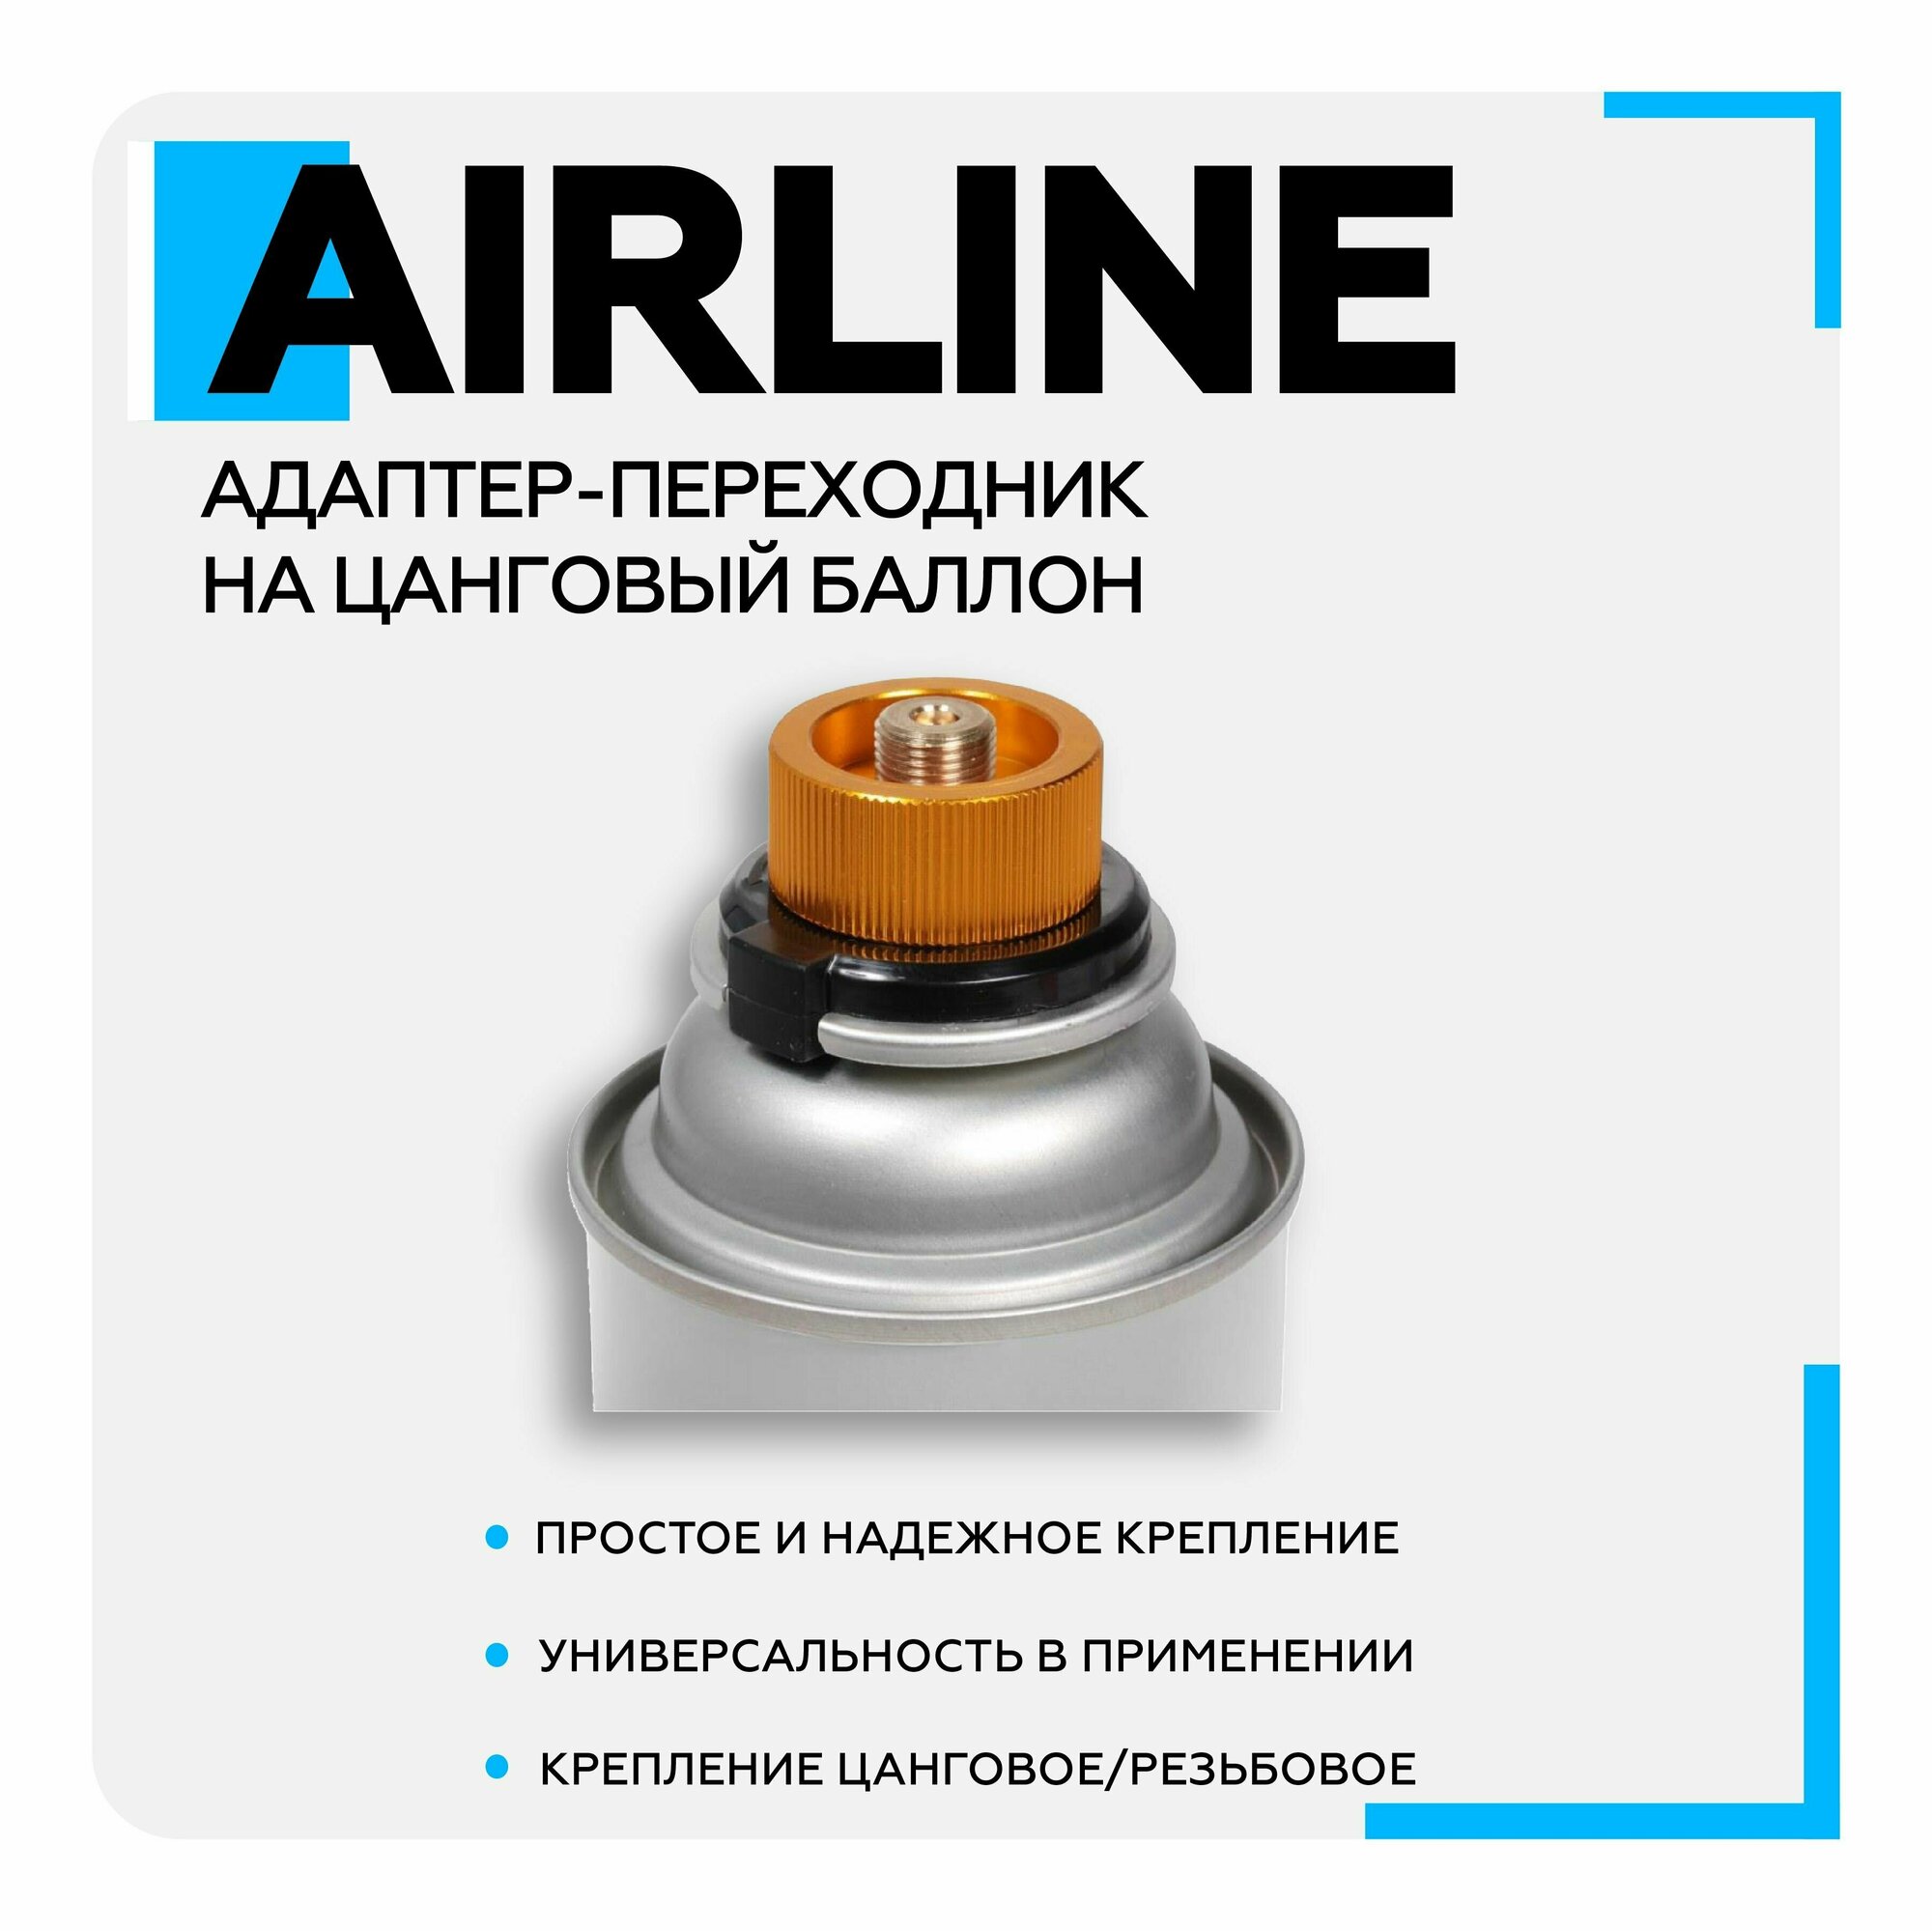 Адаптер-переходник AIRLINE (на цанговый баллон для горелки с винтовым креплением)